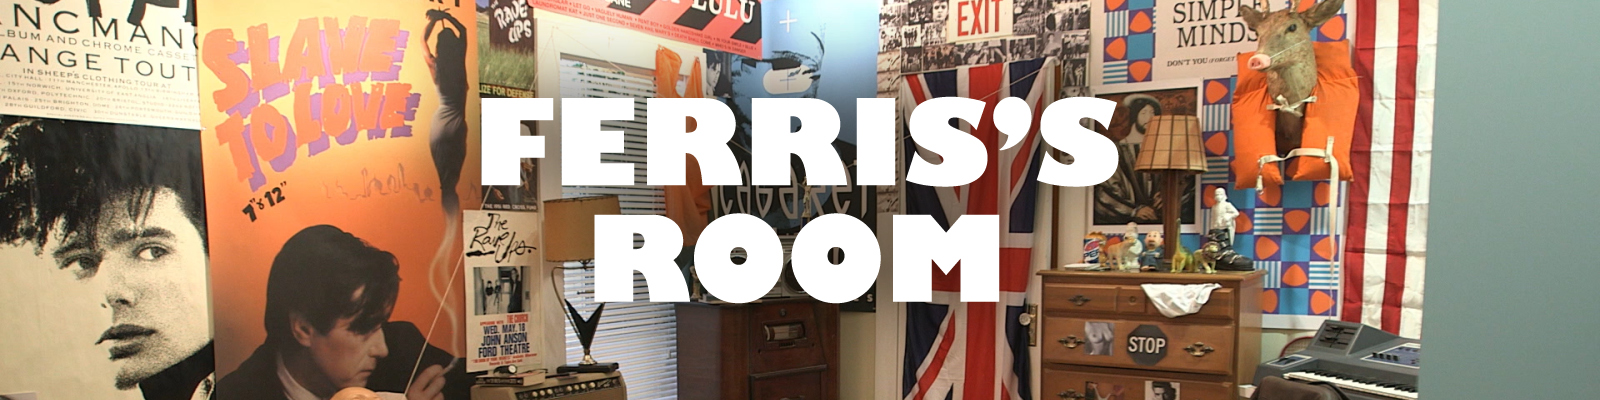 Ferris’s Room